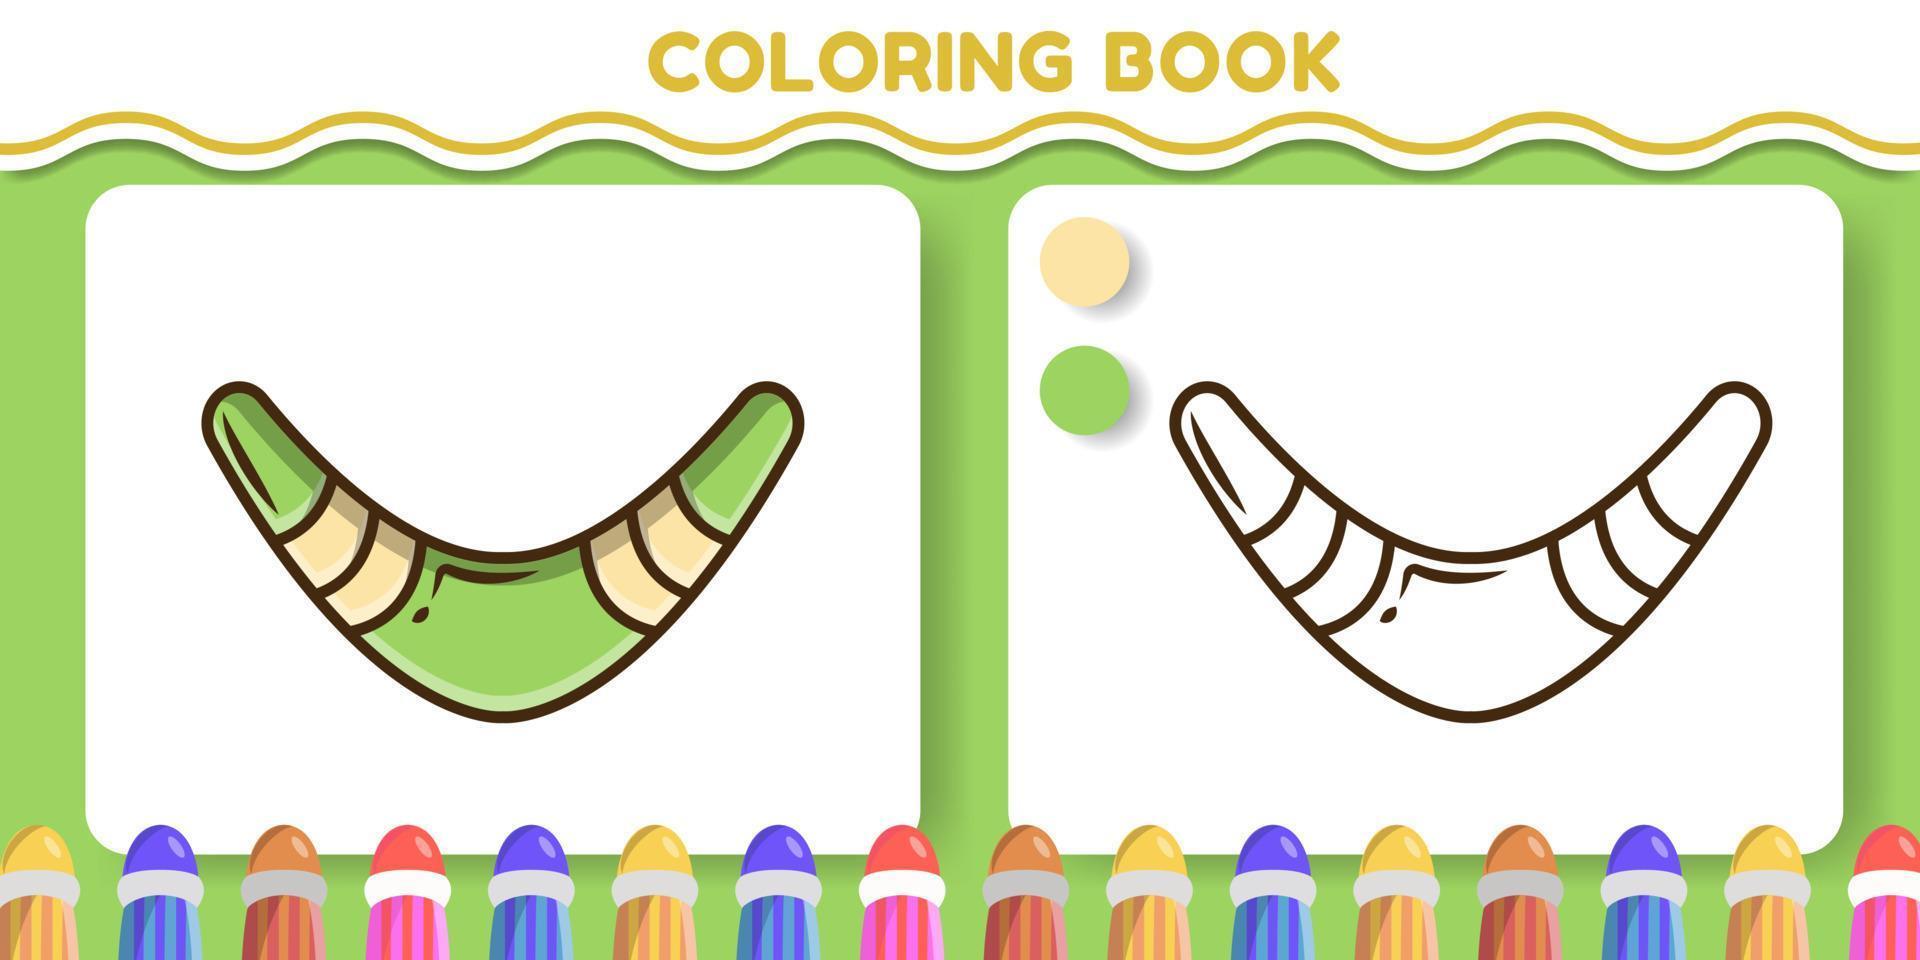 libro de colorear de doodle de dibujos animados dibujados a mano de boomerang colorido y blanco y negro para niños vector